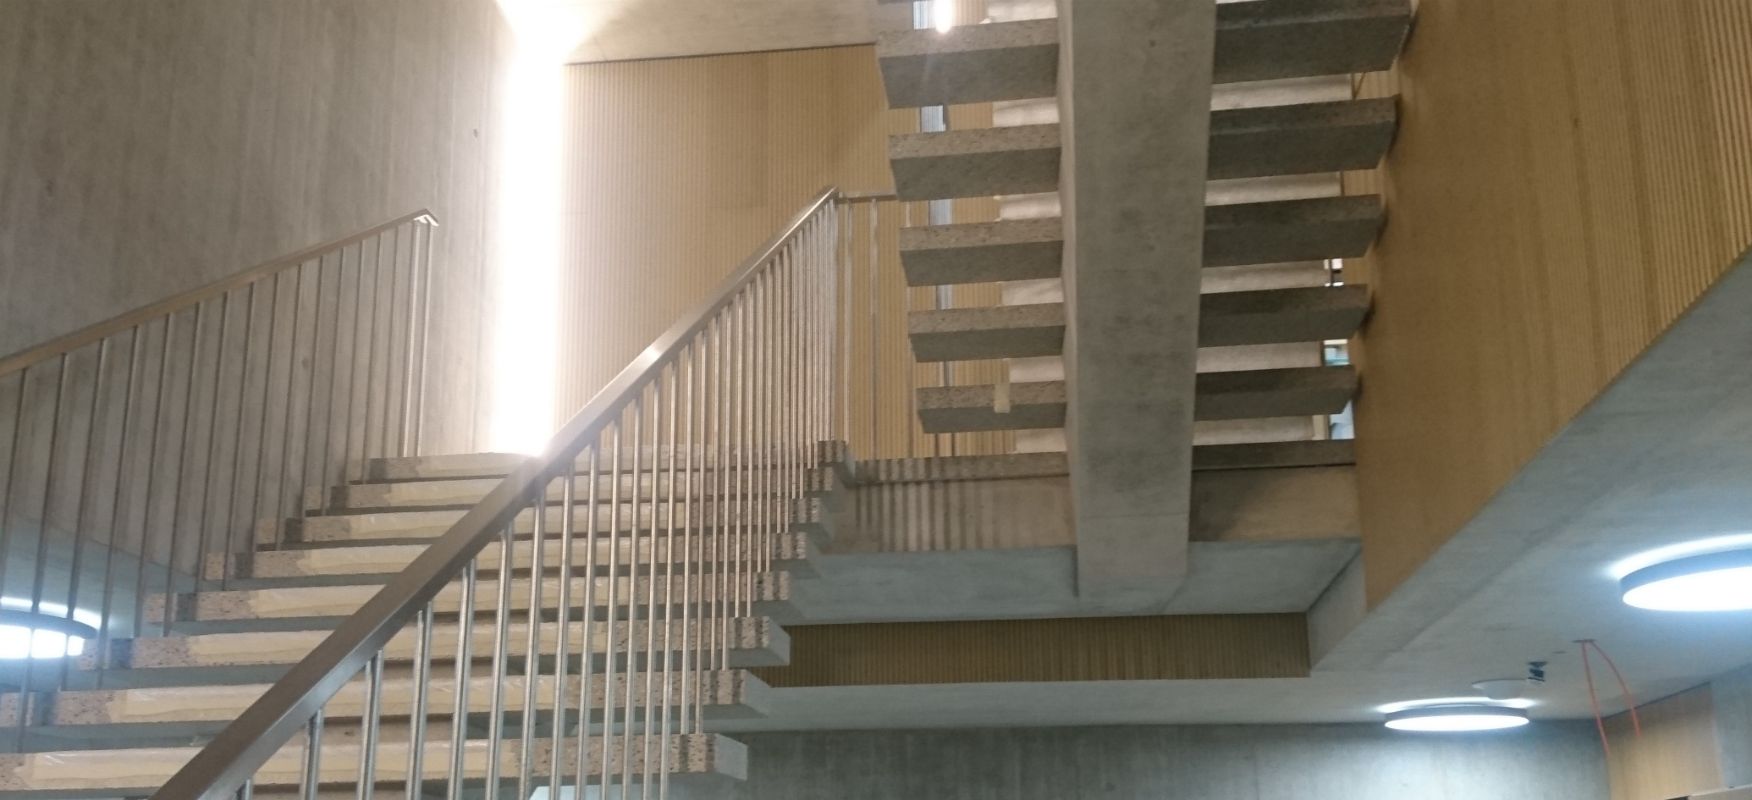 Escalier intérieur avec parapet et main courante en acier.